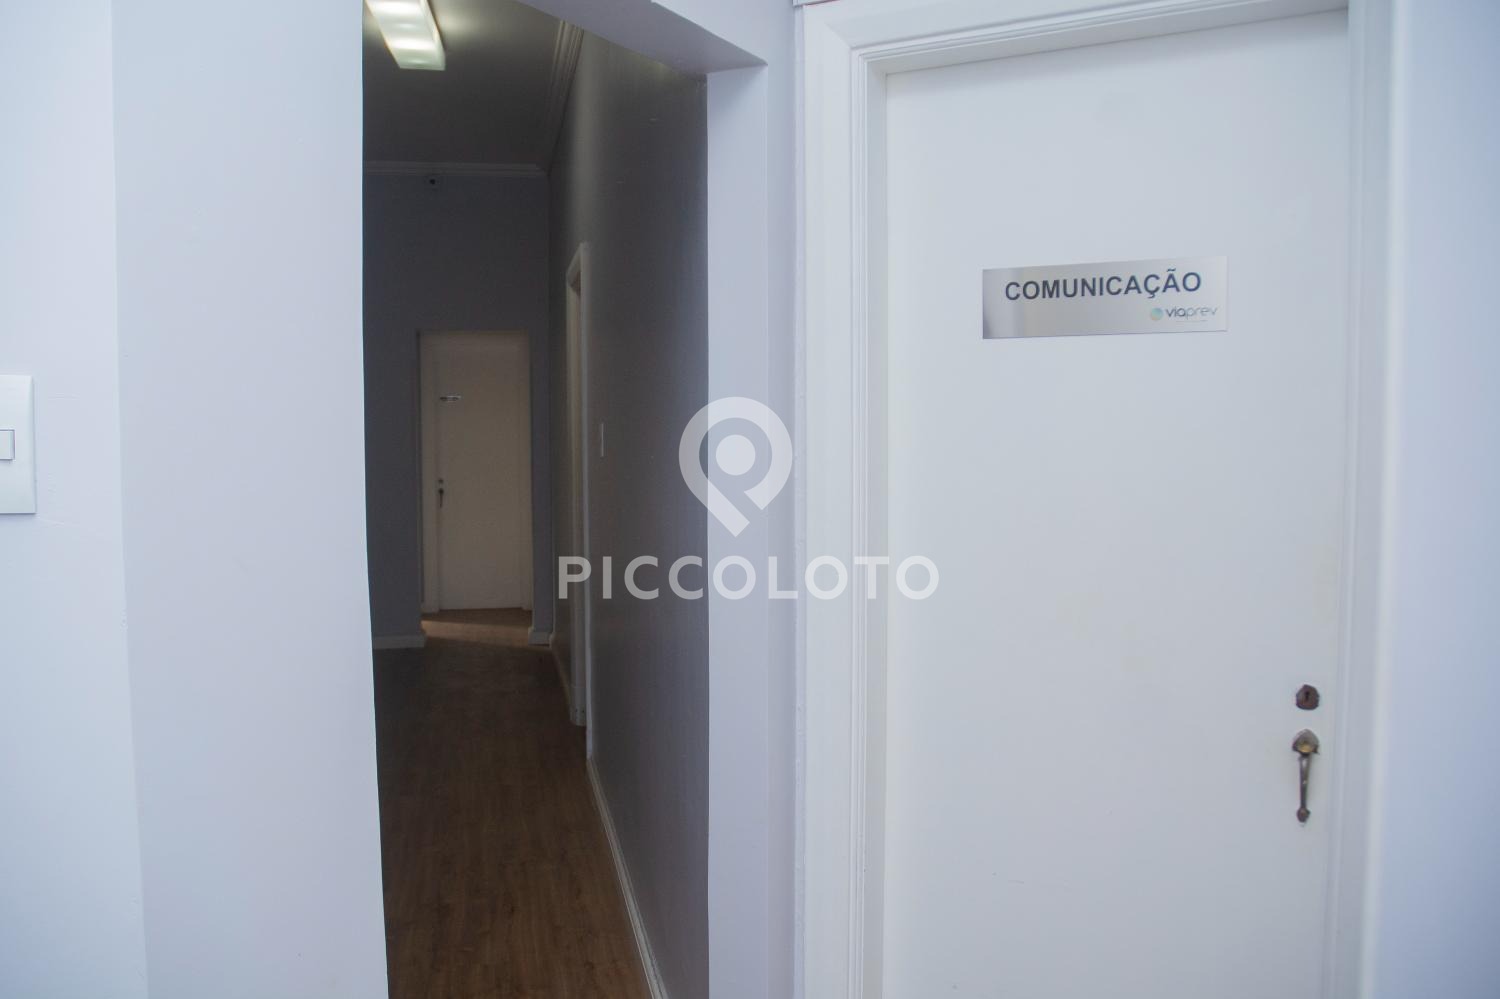 Piccoloto -Sala à venda no Centro em Campinas